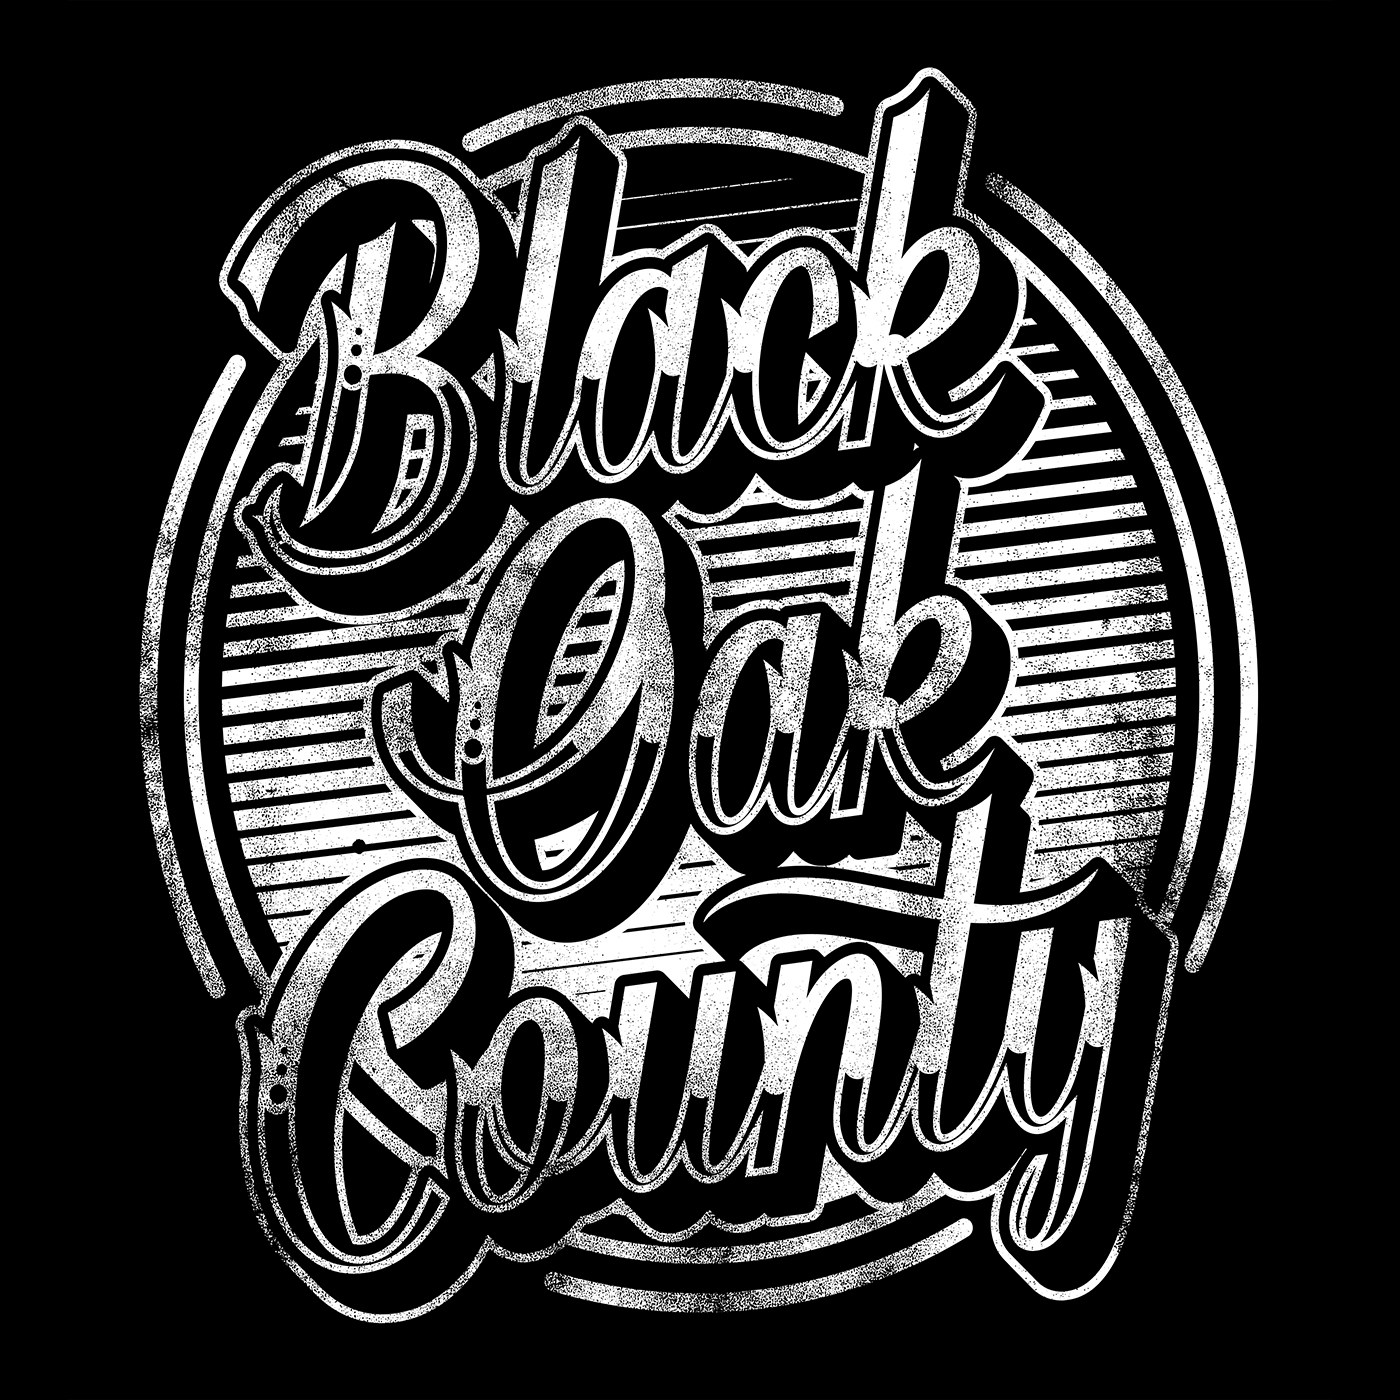 Black Oak County – “Black Oak County”